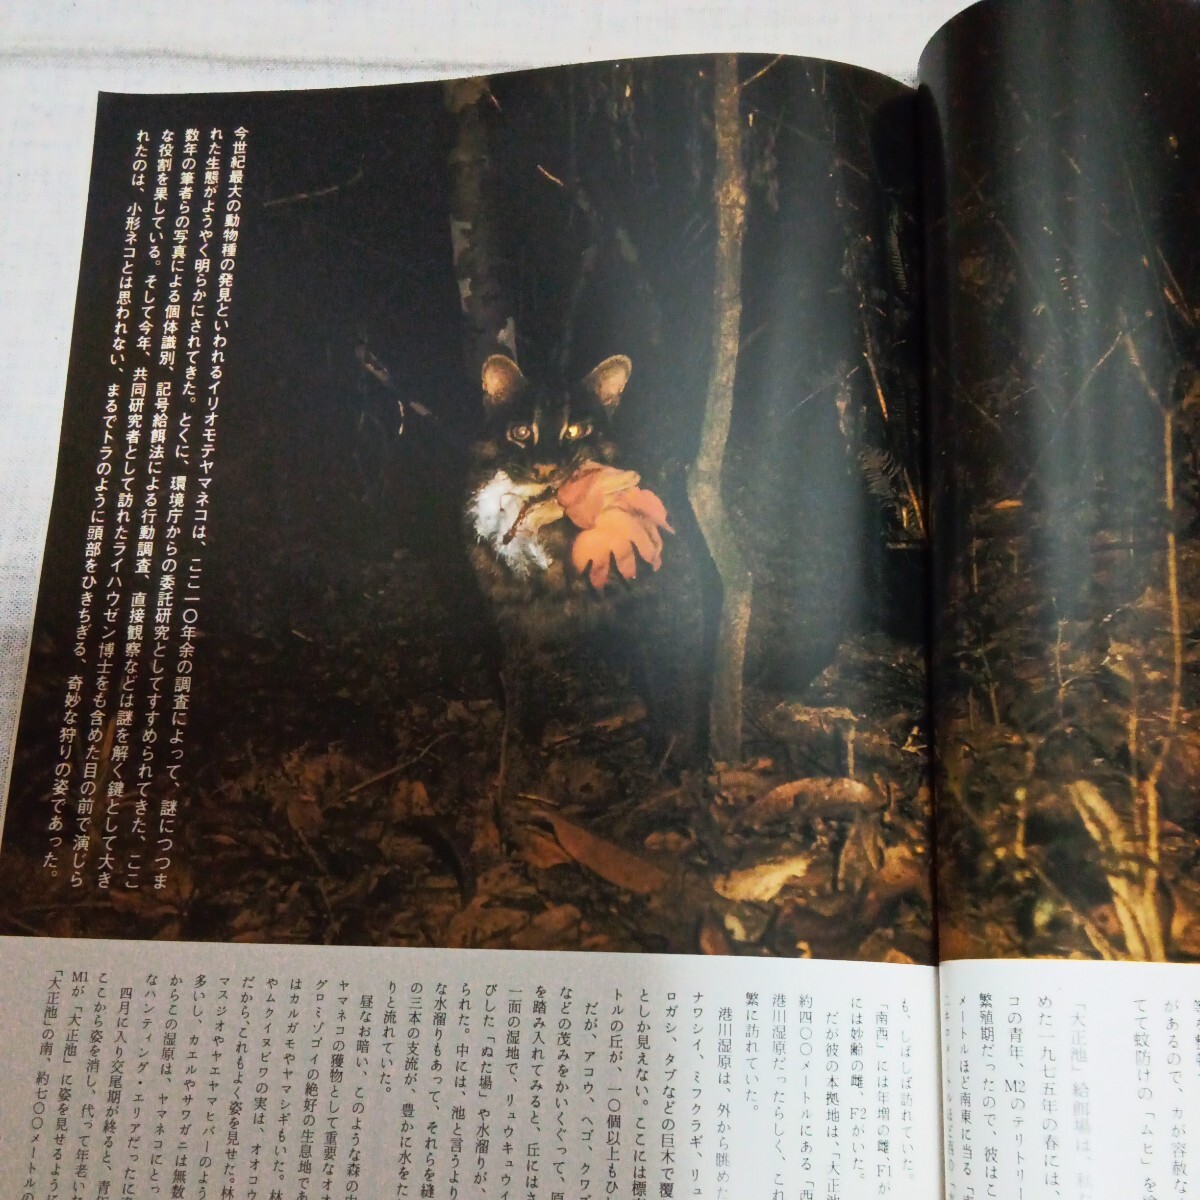 アニマ 1977.12 NO.57 ネコ 狩りの行動学 イリオモテヤマネコ ボブキャット チーターの画像9